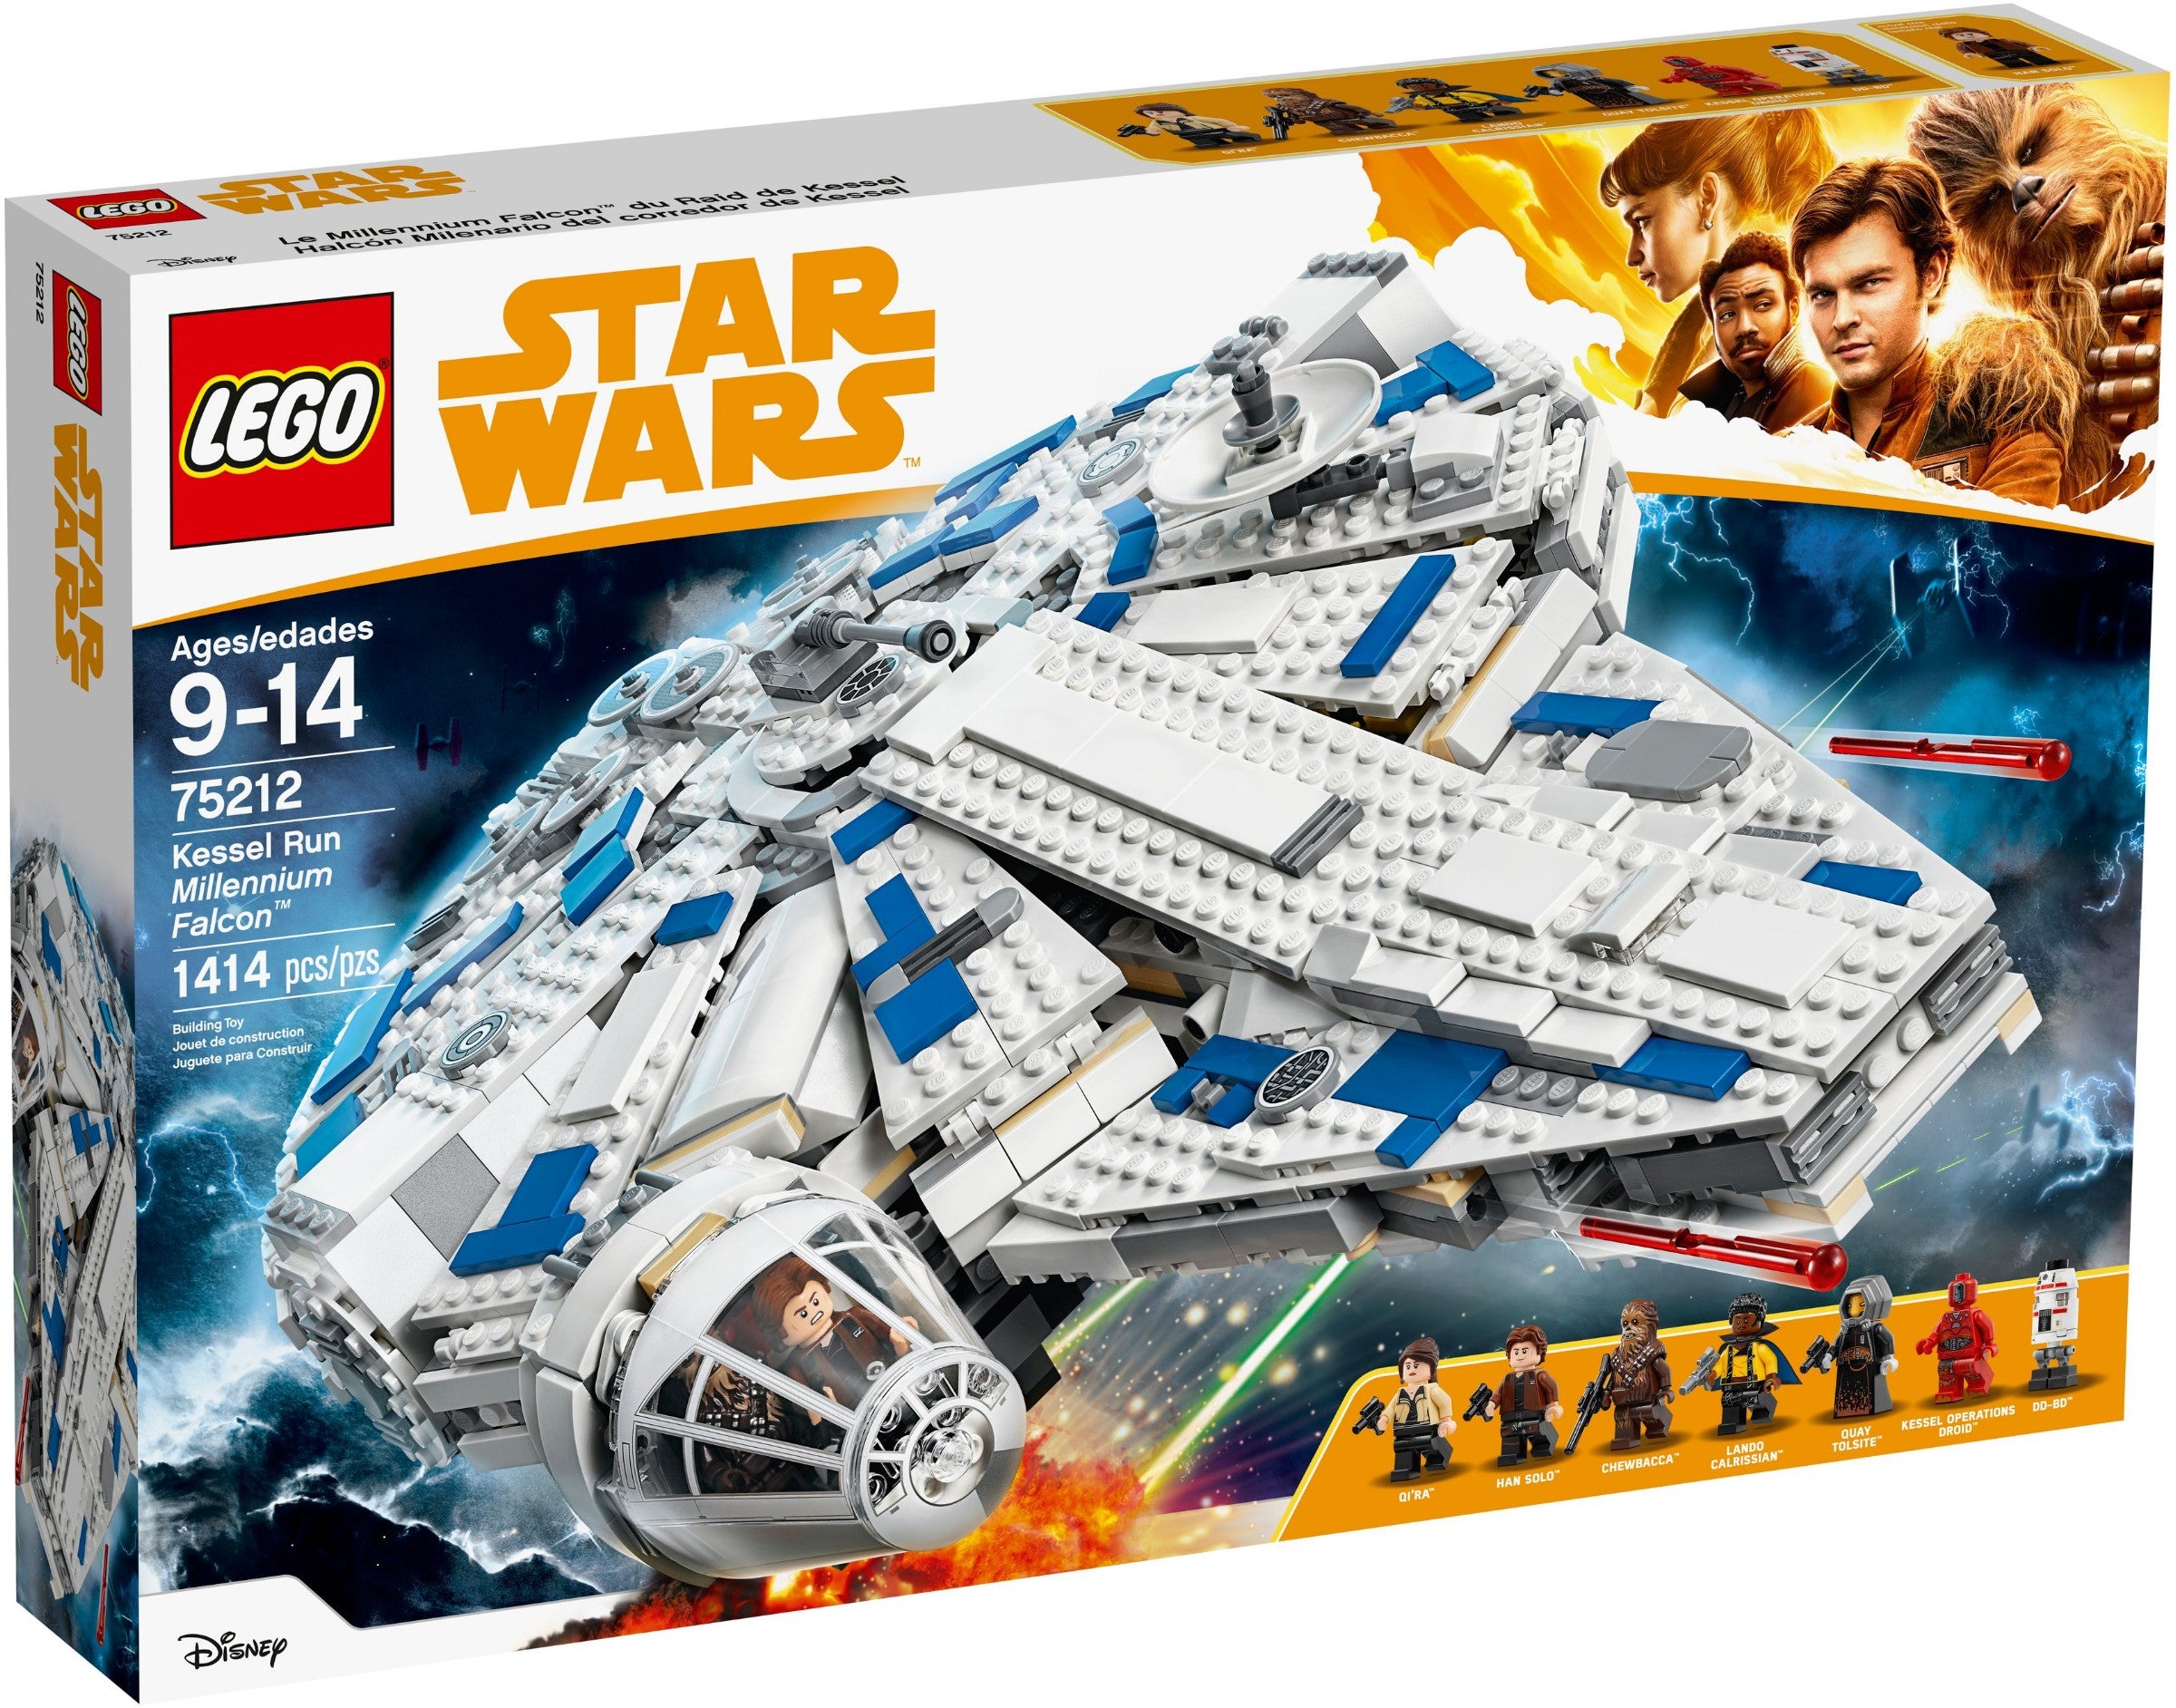 Lego Star Wars 75212 - Kessel Run Millennium Falcon